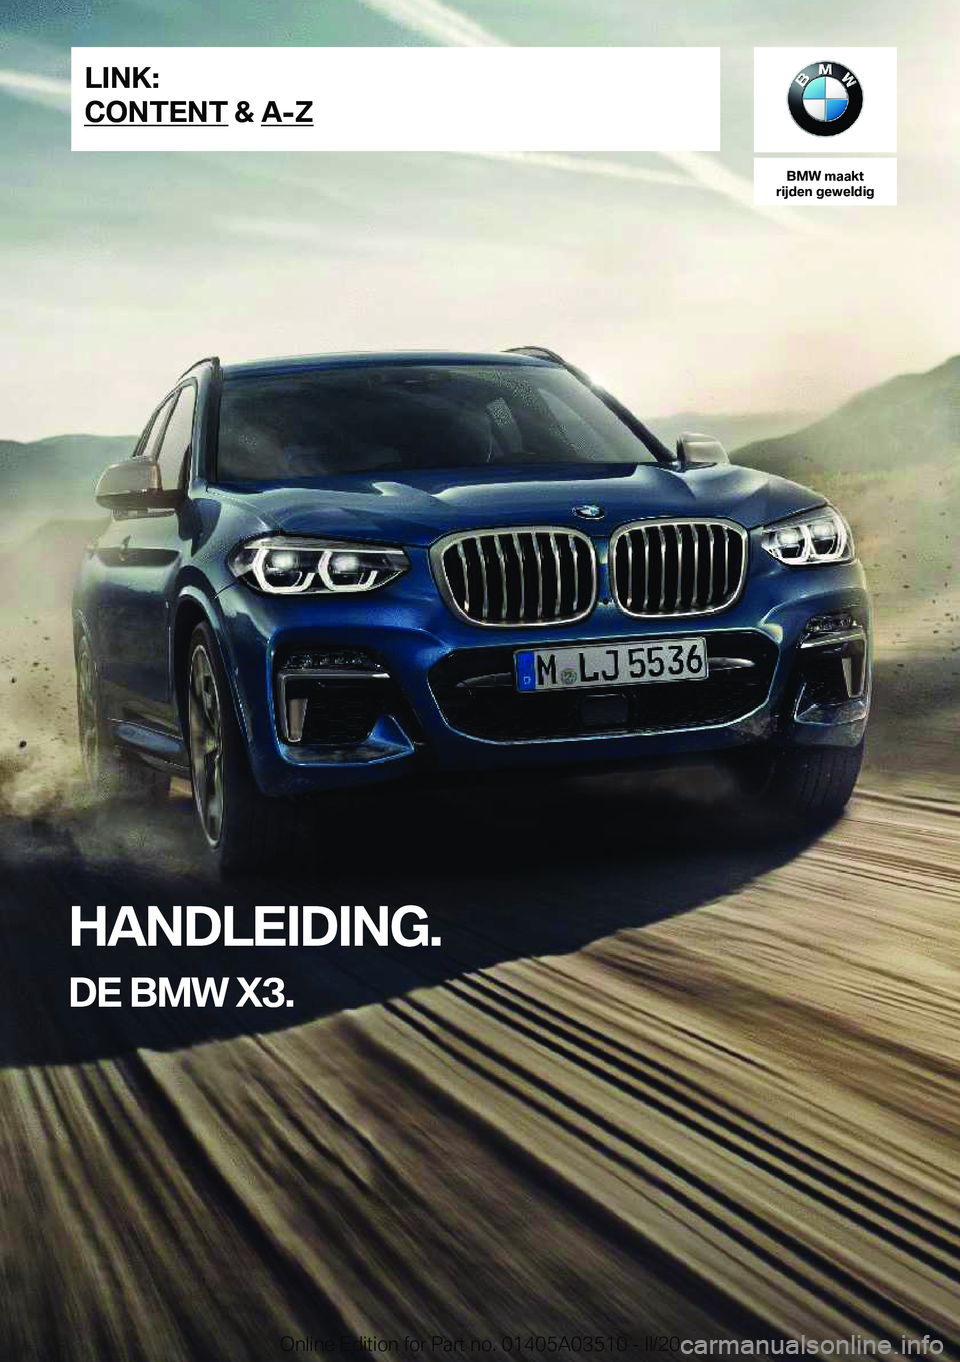 BMW X3 2020  Instructieboekjes (in Dutch) �B�M�W��m�a�a�k�t
�r�i�j�d�e�n��g�e�w�e�l�d�i�g
�H�A�N�D�L�E�I�D�I�N�G�.
�D�E��B�M�W��X�3�.�L�I�N�K�:
�C�O�N�T�E�N�T��&��A�-�Z�O�n�l�i�n�e��E�d�i�t�i�o�n��f�o�r��P�a�r�t��n�o�.��0�1�4�0�5�A